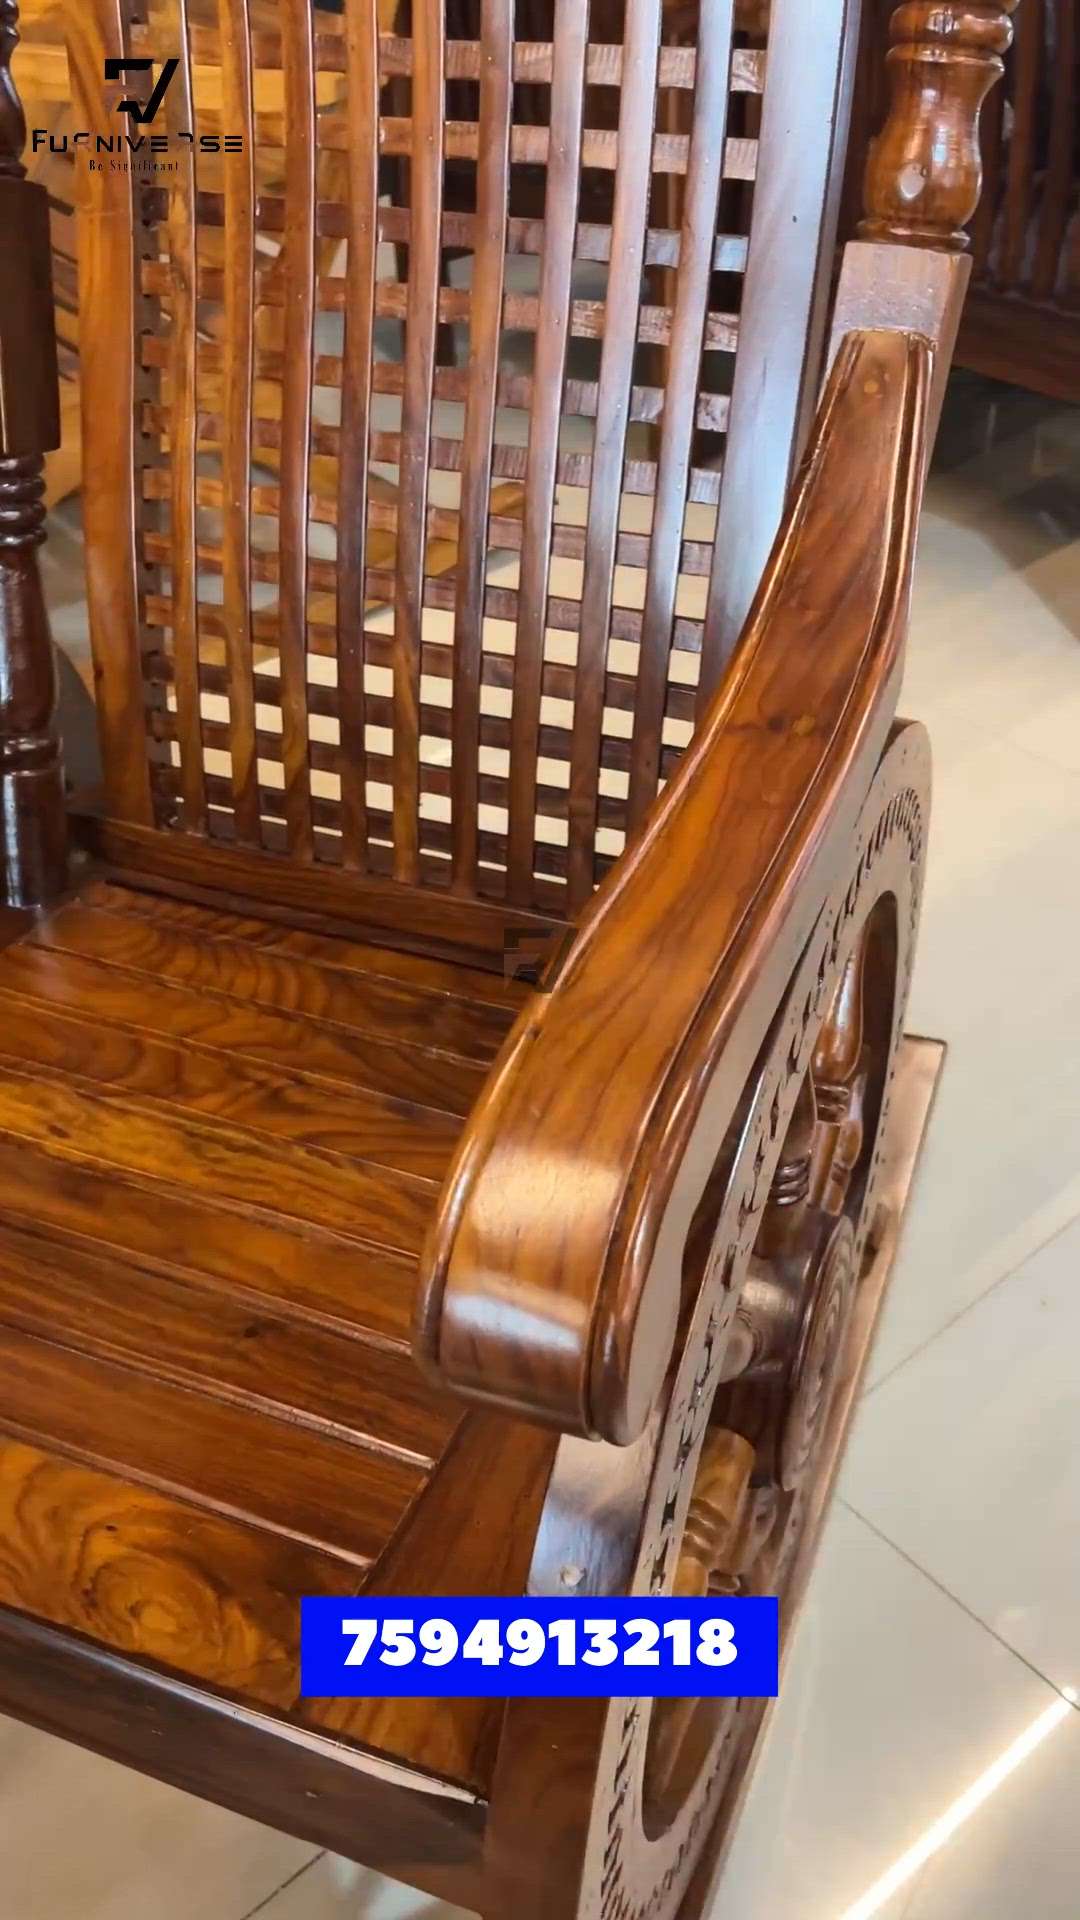 Traditional Rocking chair
Teak wood
7594913218
 #furnitures  #furniturework  #furnituremanufacturer  #Palakkad  #kerala